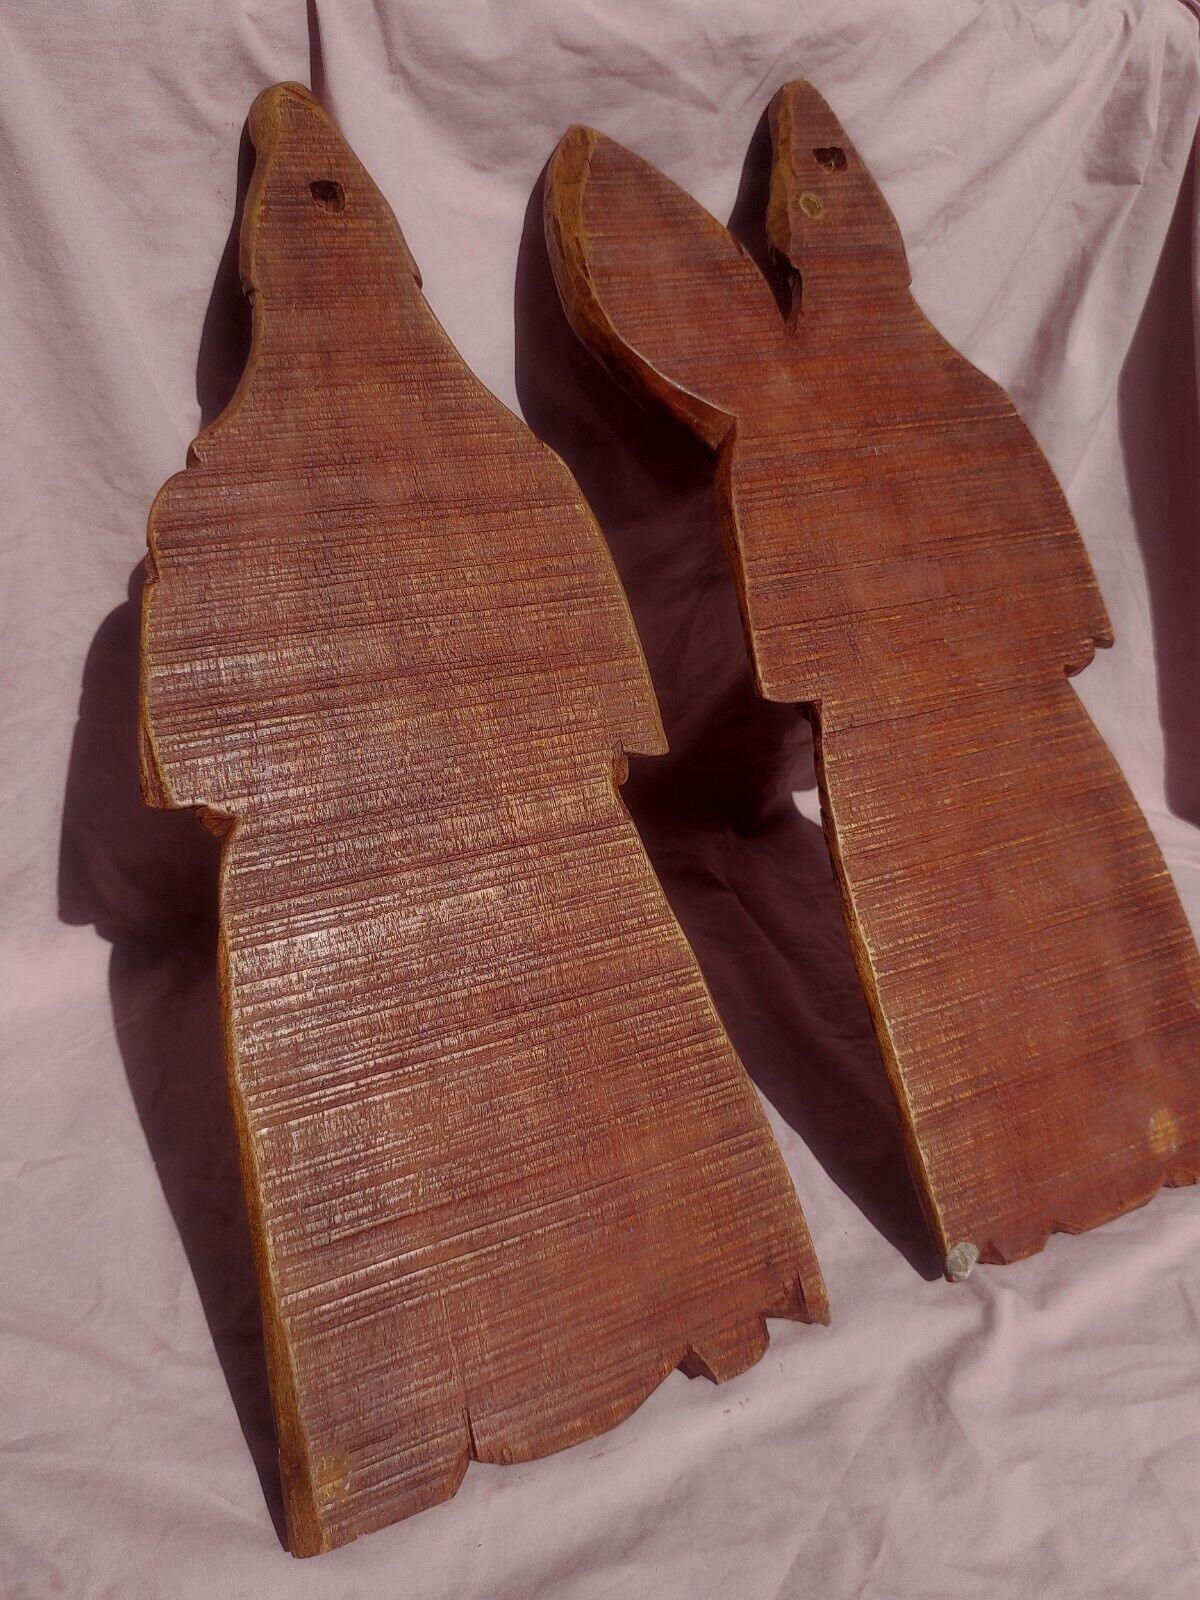 Benin Edo Warrior Figures Wood Carving Sculptures Nigerian Africa 24" - Tommy's Treasure